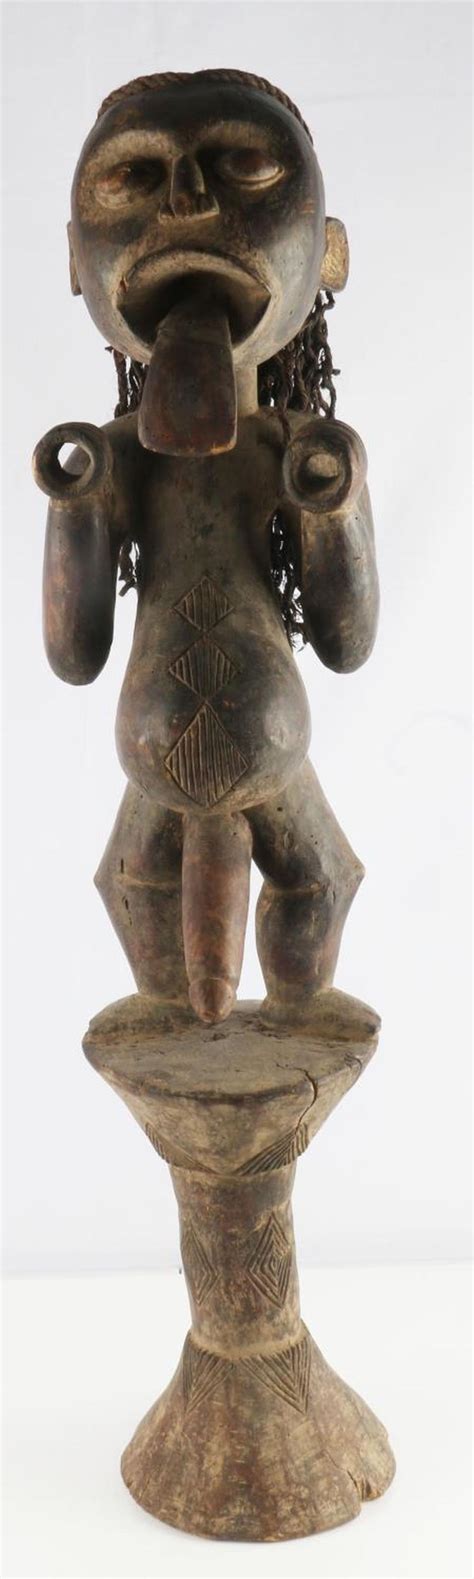 Figure Sculpture African Art African Mask Fertility Statue 672 Art And Collectibles Sculpture Etna